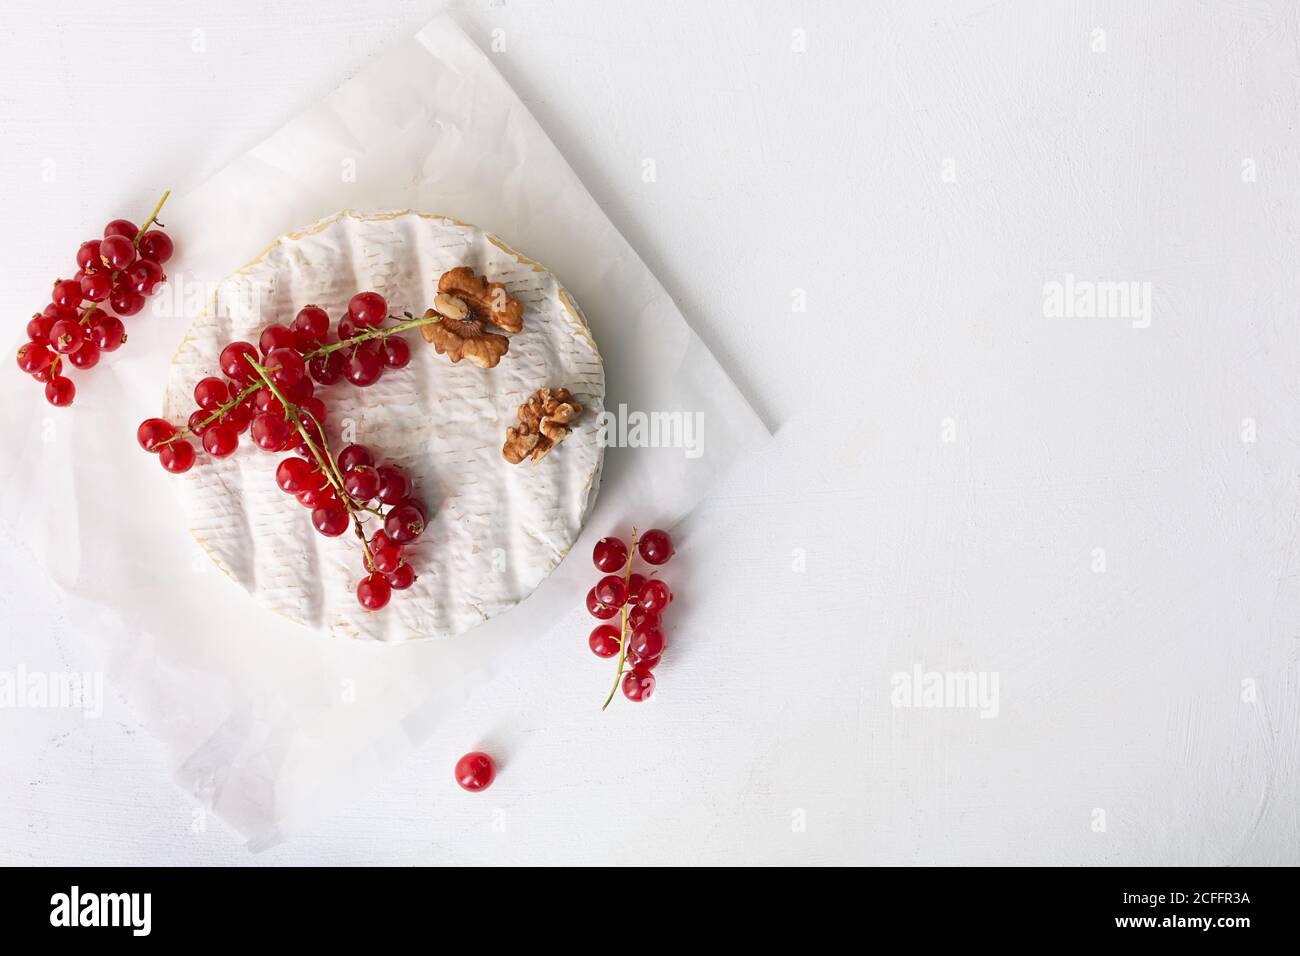 Formaggio Camembert con frutta, noci e bacche su sfondo bianco con spazio copia, vista dall'alto Foto Stock